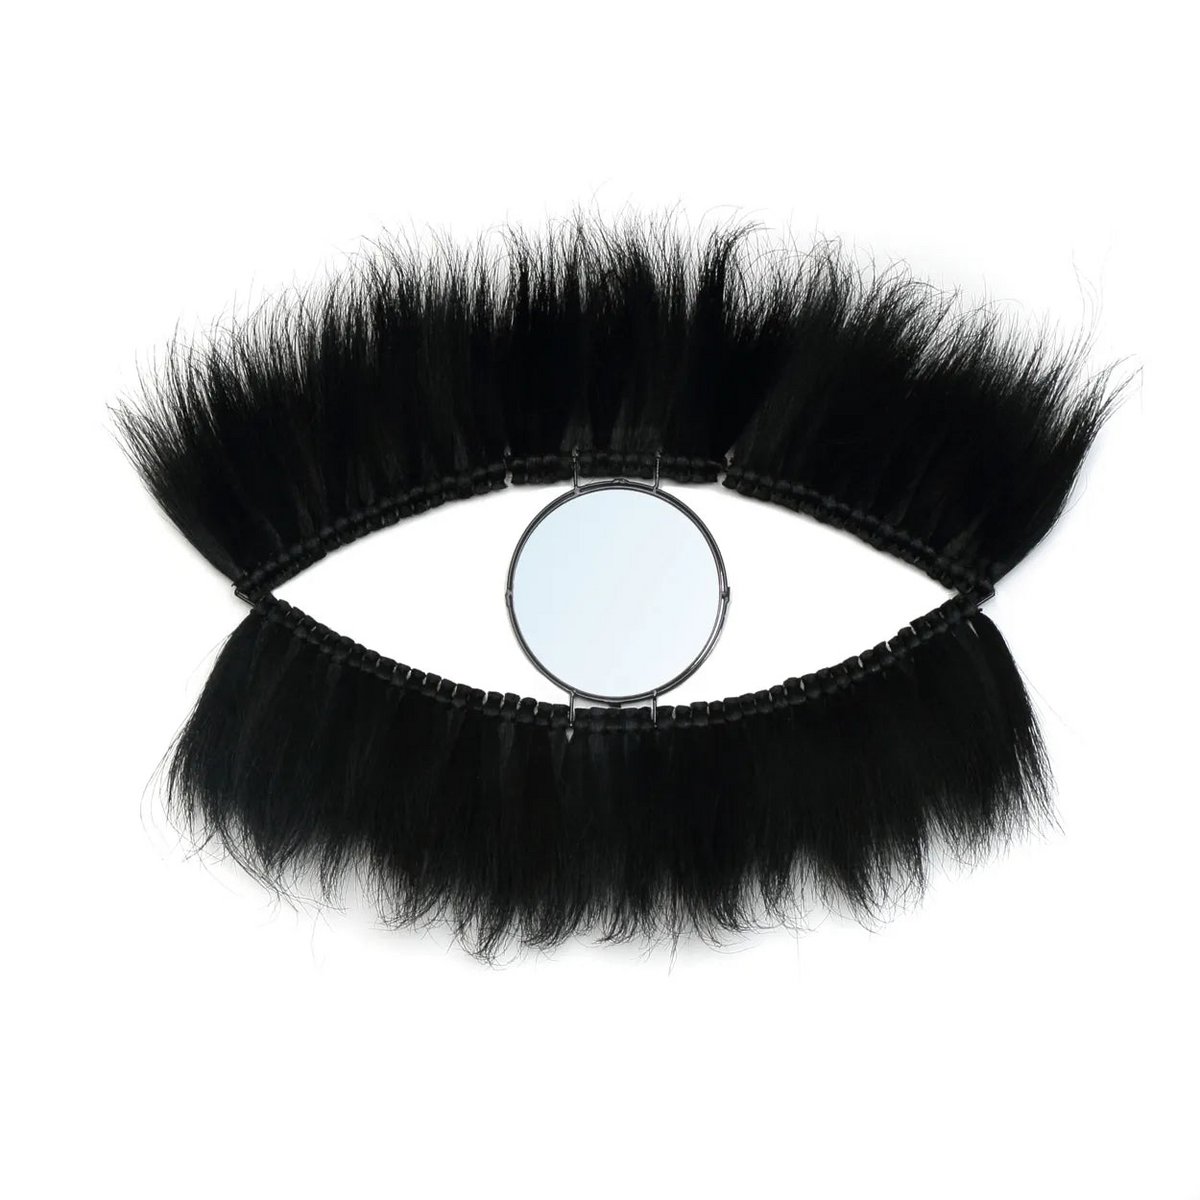 Der Black-Eye-Spiegel – Schwarz